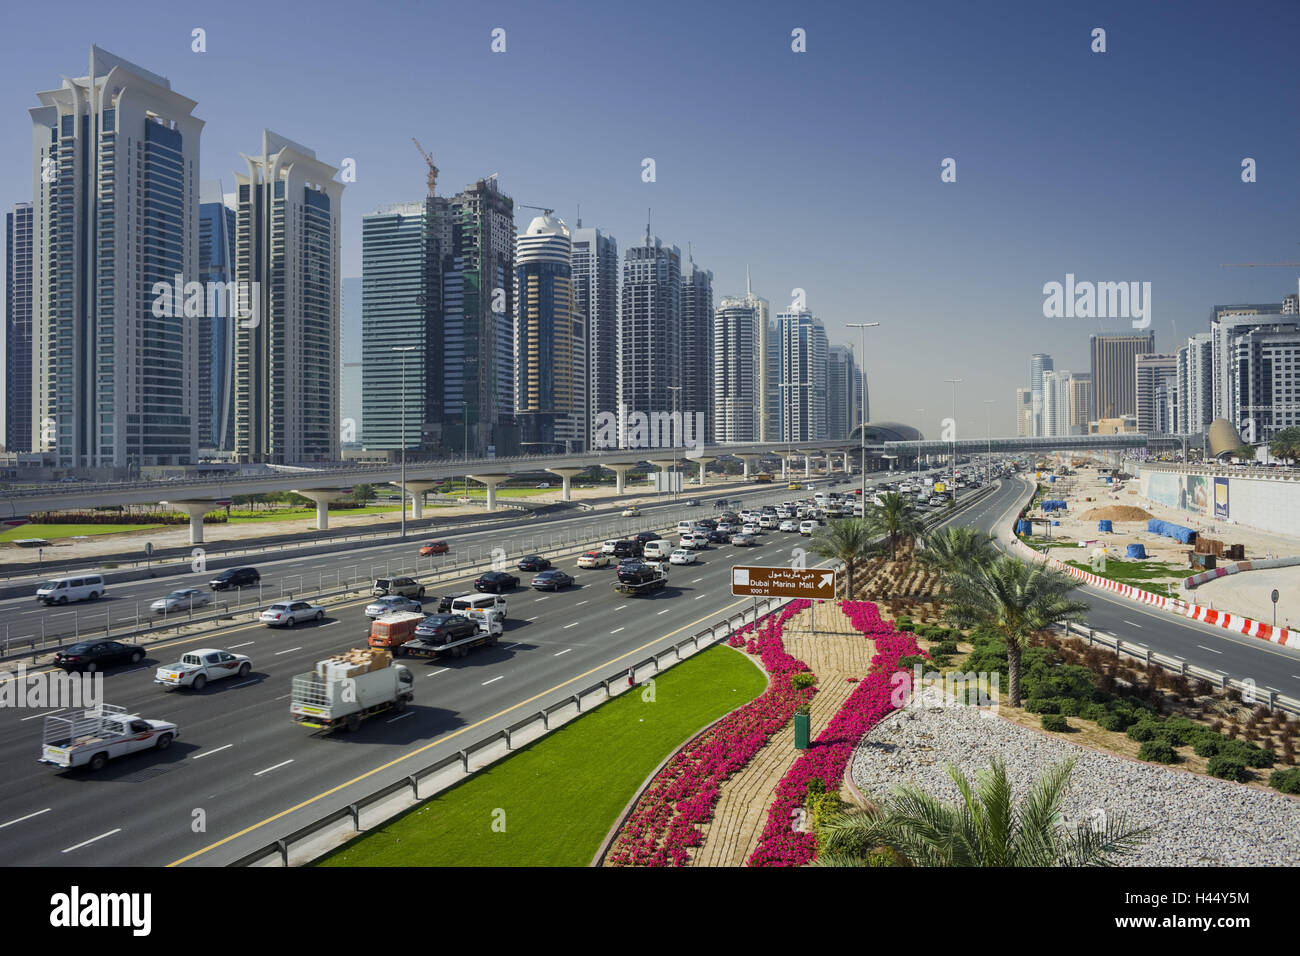 Emirats arabes unis, dubaï, Sheik Zayed Road, scène de rue, saumure, Tour Jumeirah Banque D'Images